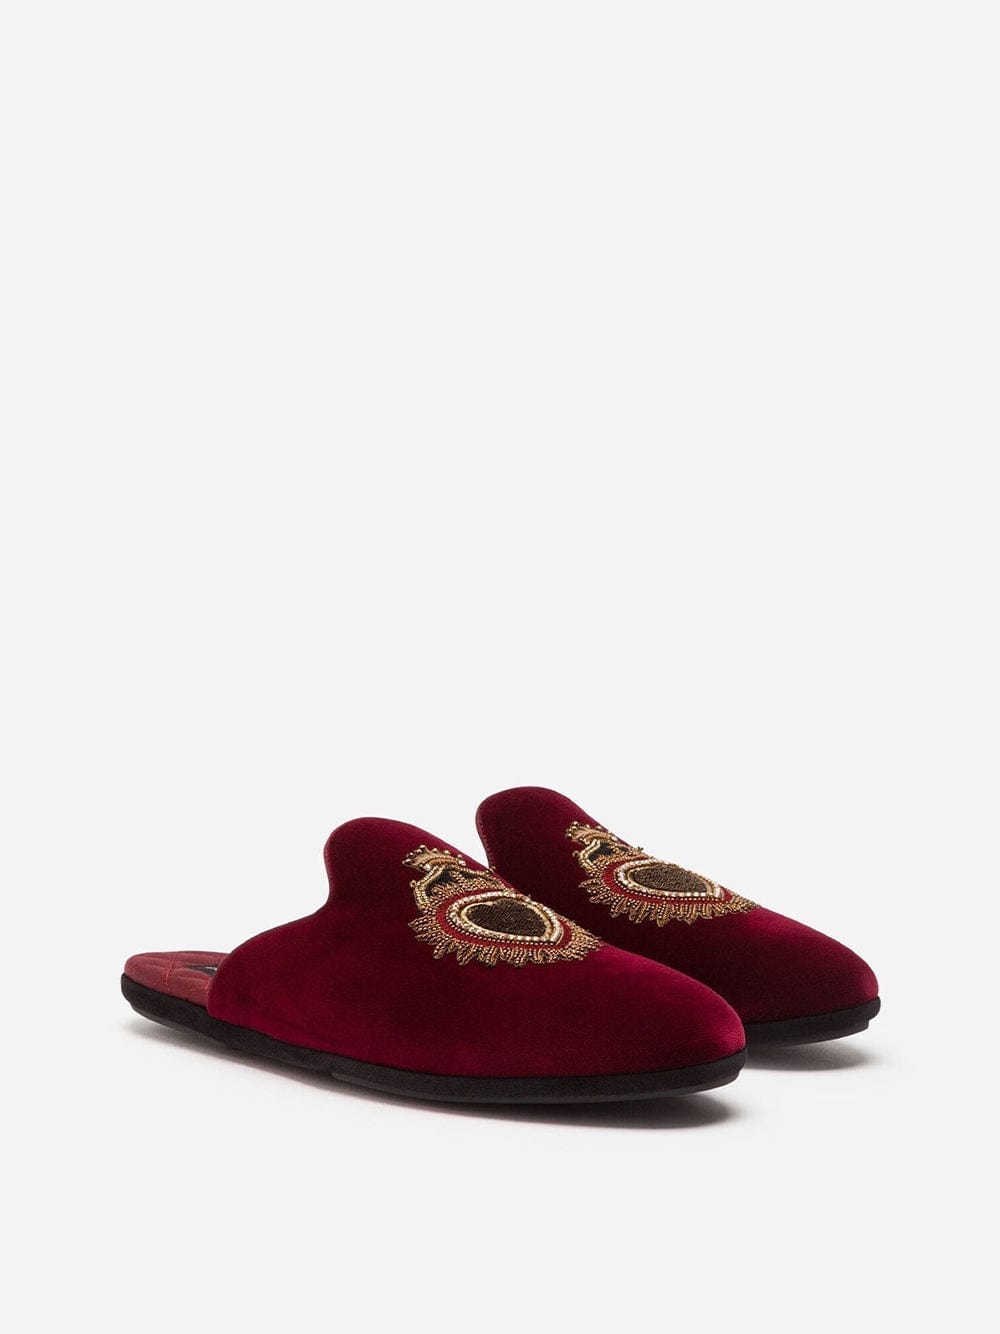 Dolce & Gabbana Sacred-Heart Embroidery Velvet Slippers